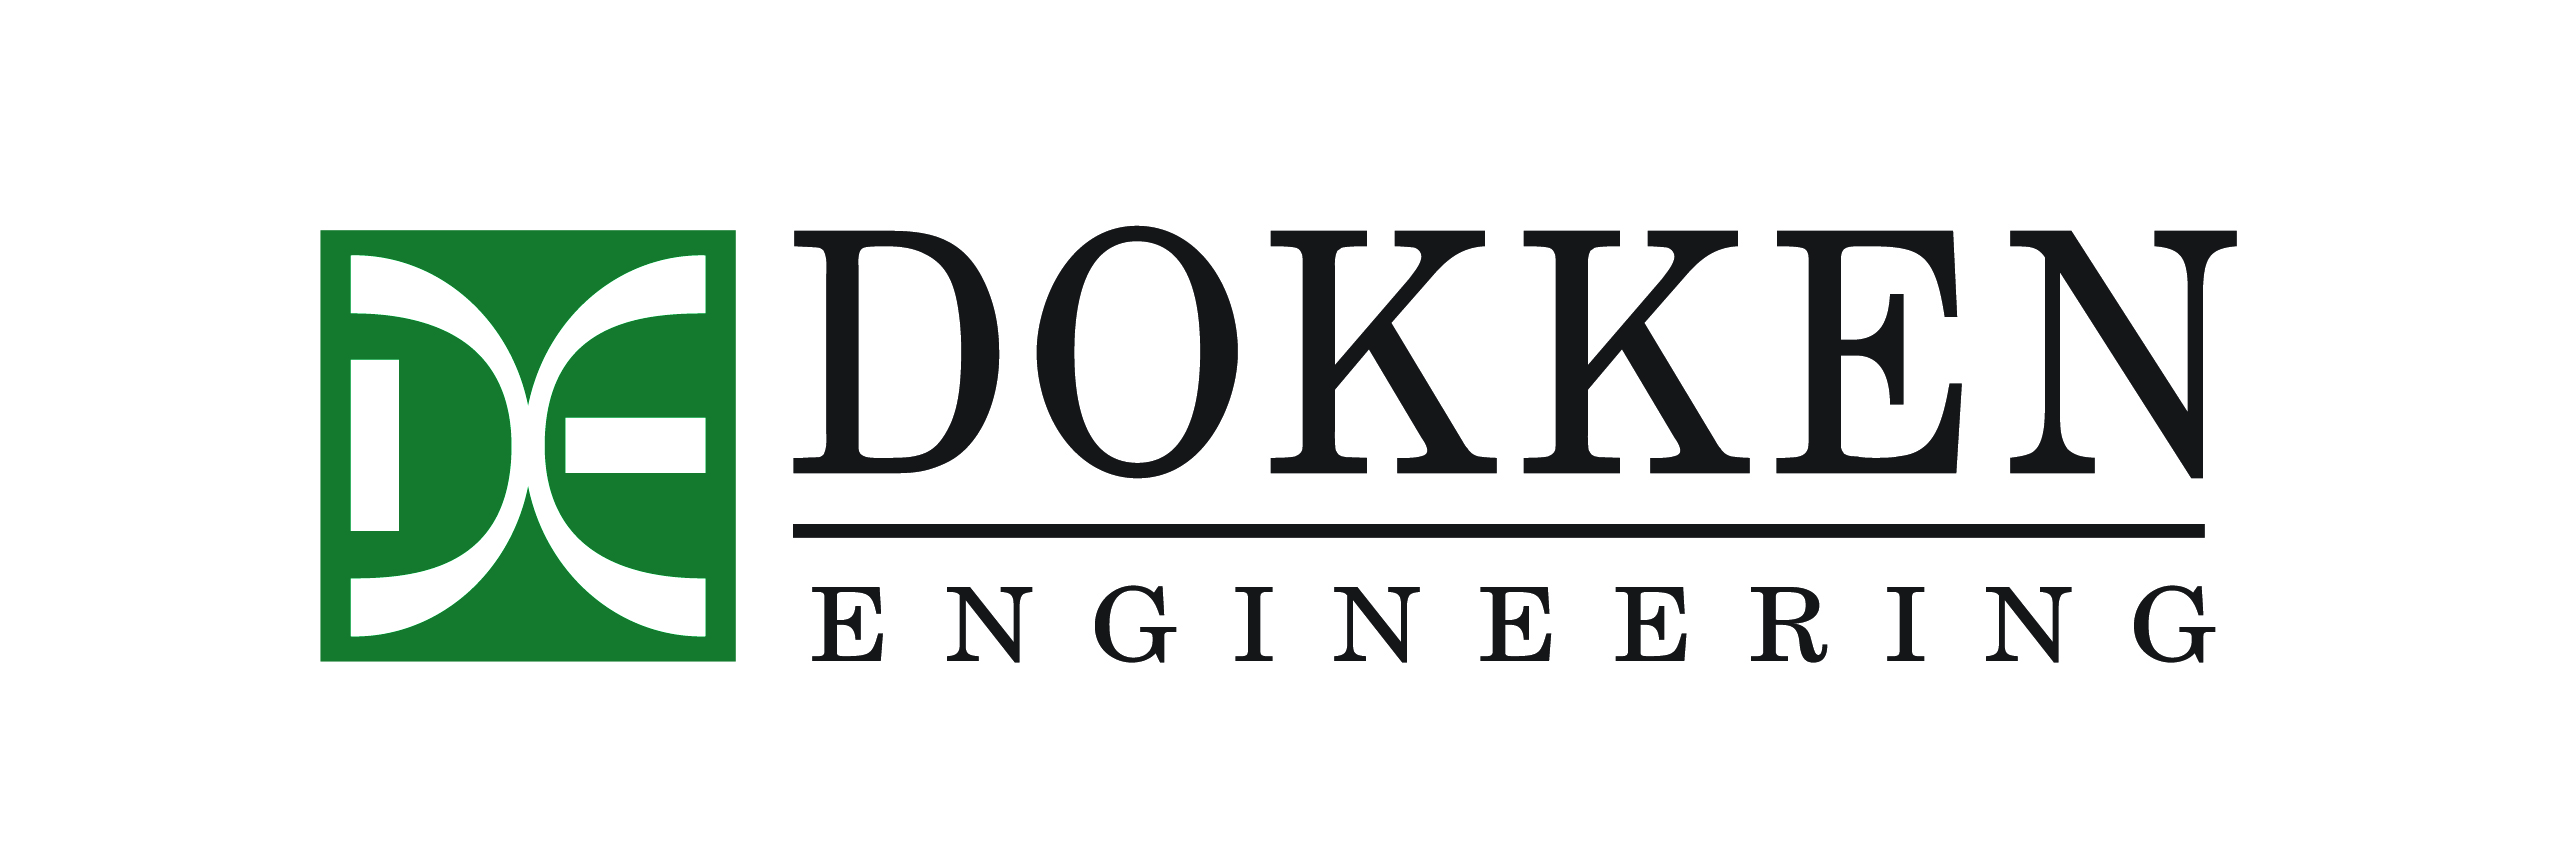 DOKKEN Engineering